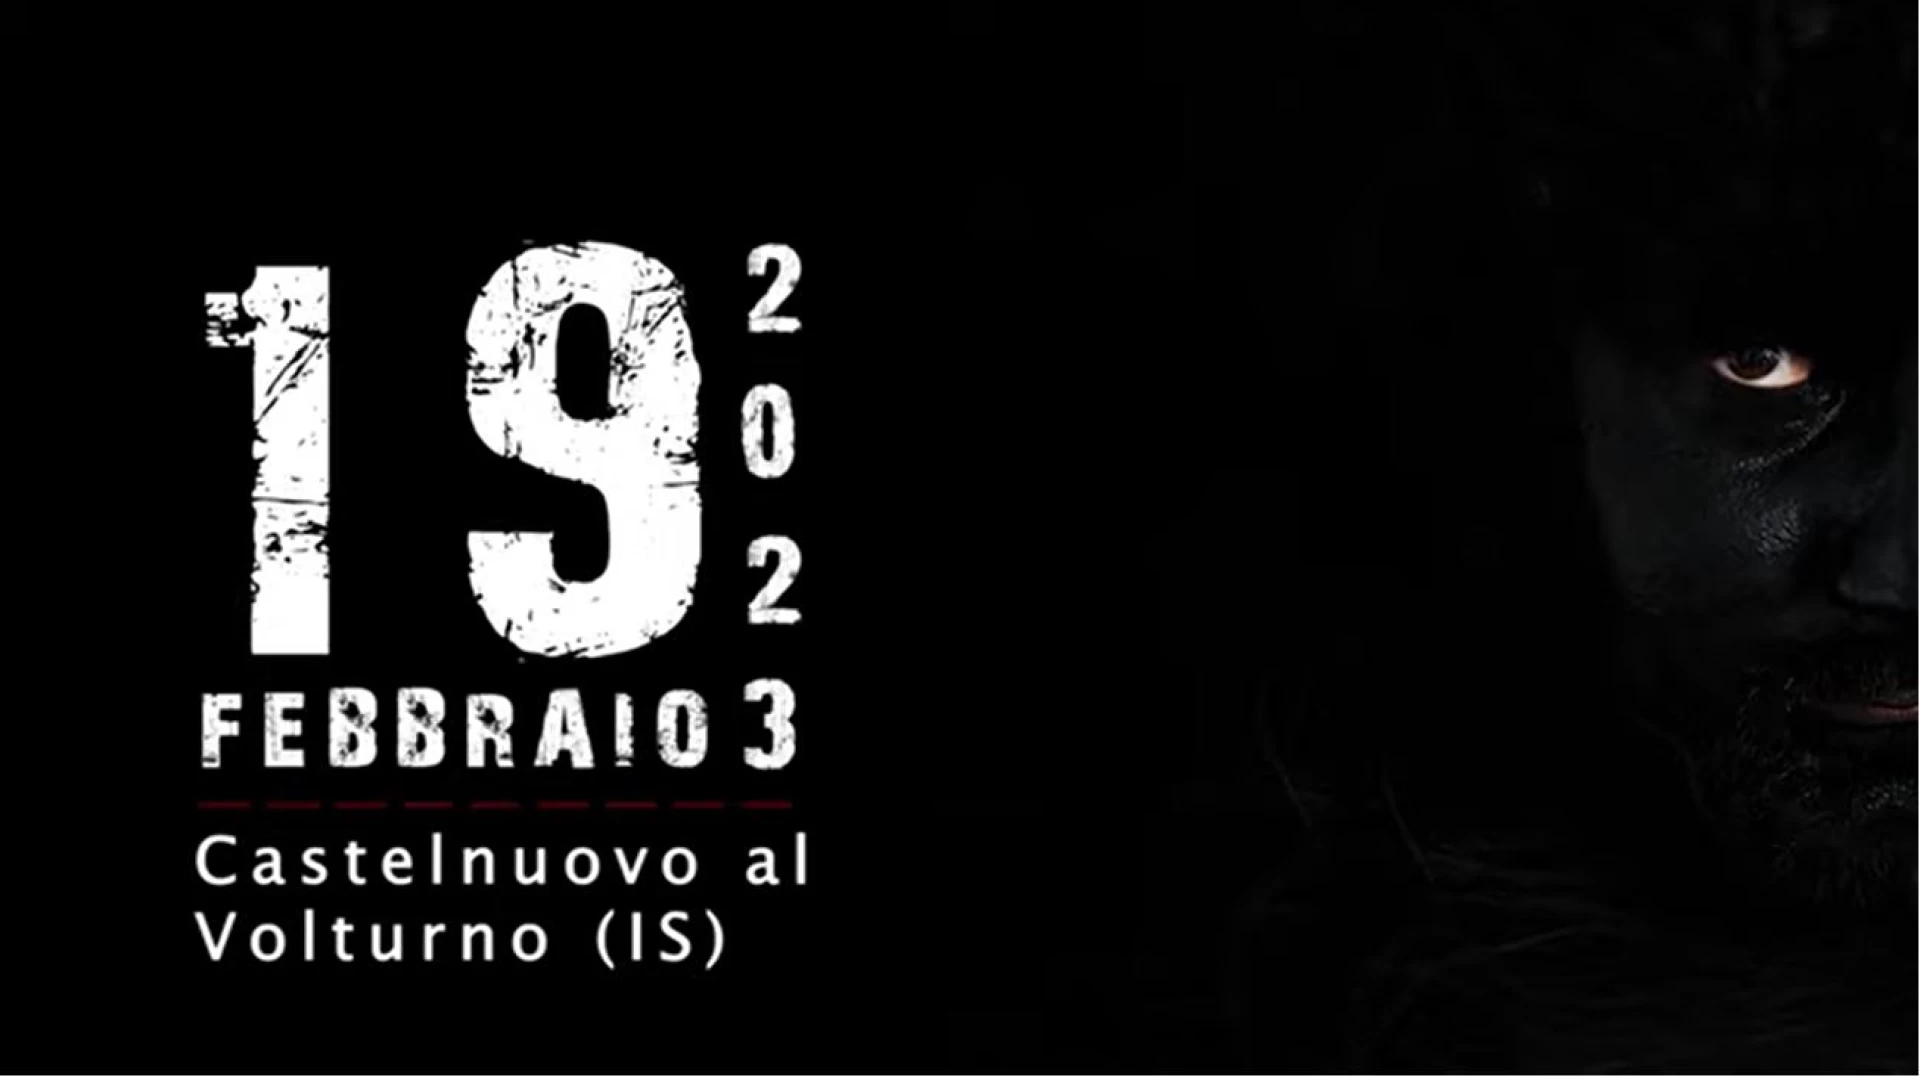 Gl'Cierv edizione 2023, a Castelnuovo al Volturno è tutto pronto per l'edizione annuale. Appuntamento per domenica19 febbraio. Guarda il trailer